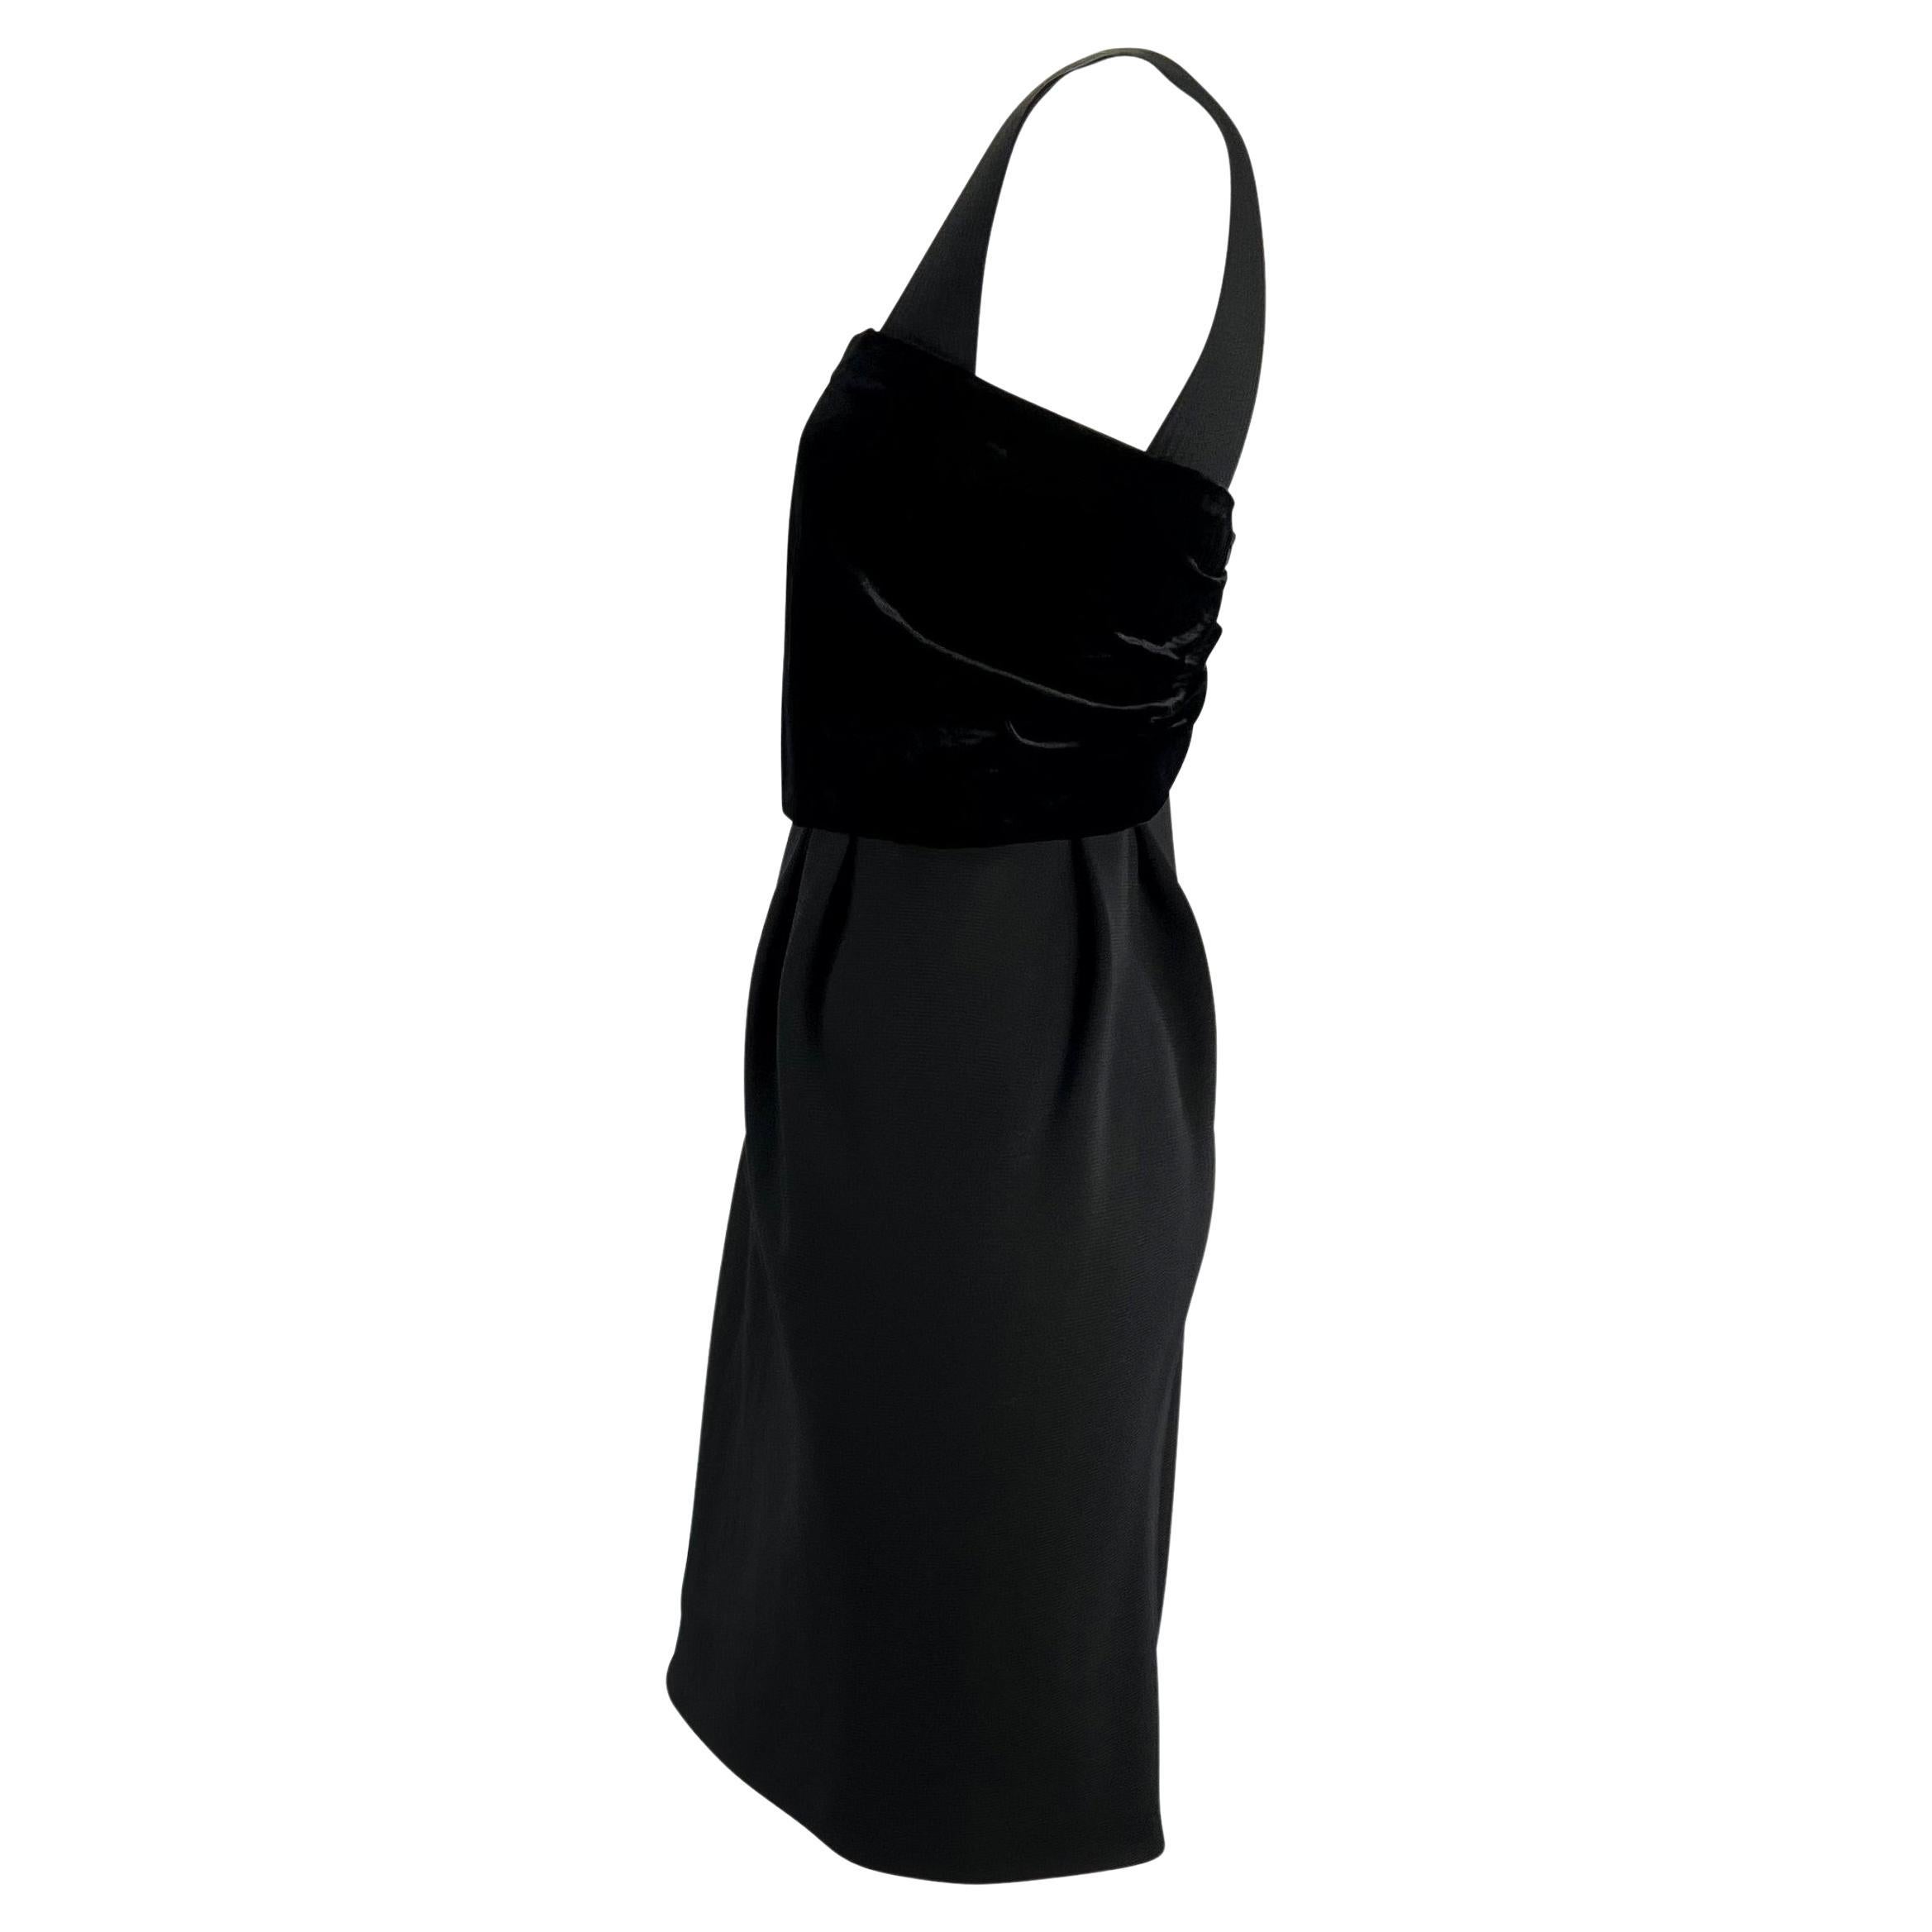 Nous vous présentons une magnifique robe Gianni Versace Couture en velours noir, créée par Gianni Versace. Cette petite robe noire classique est dotée de larges bretelles, d'un décolleté carré et d'un bustier en velours enveloppé. Issue de la